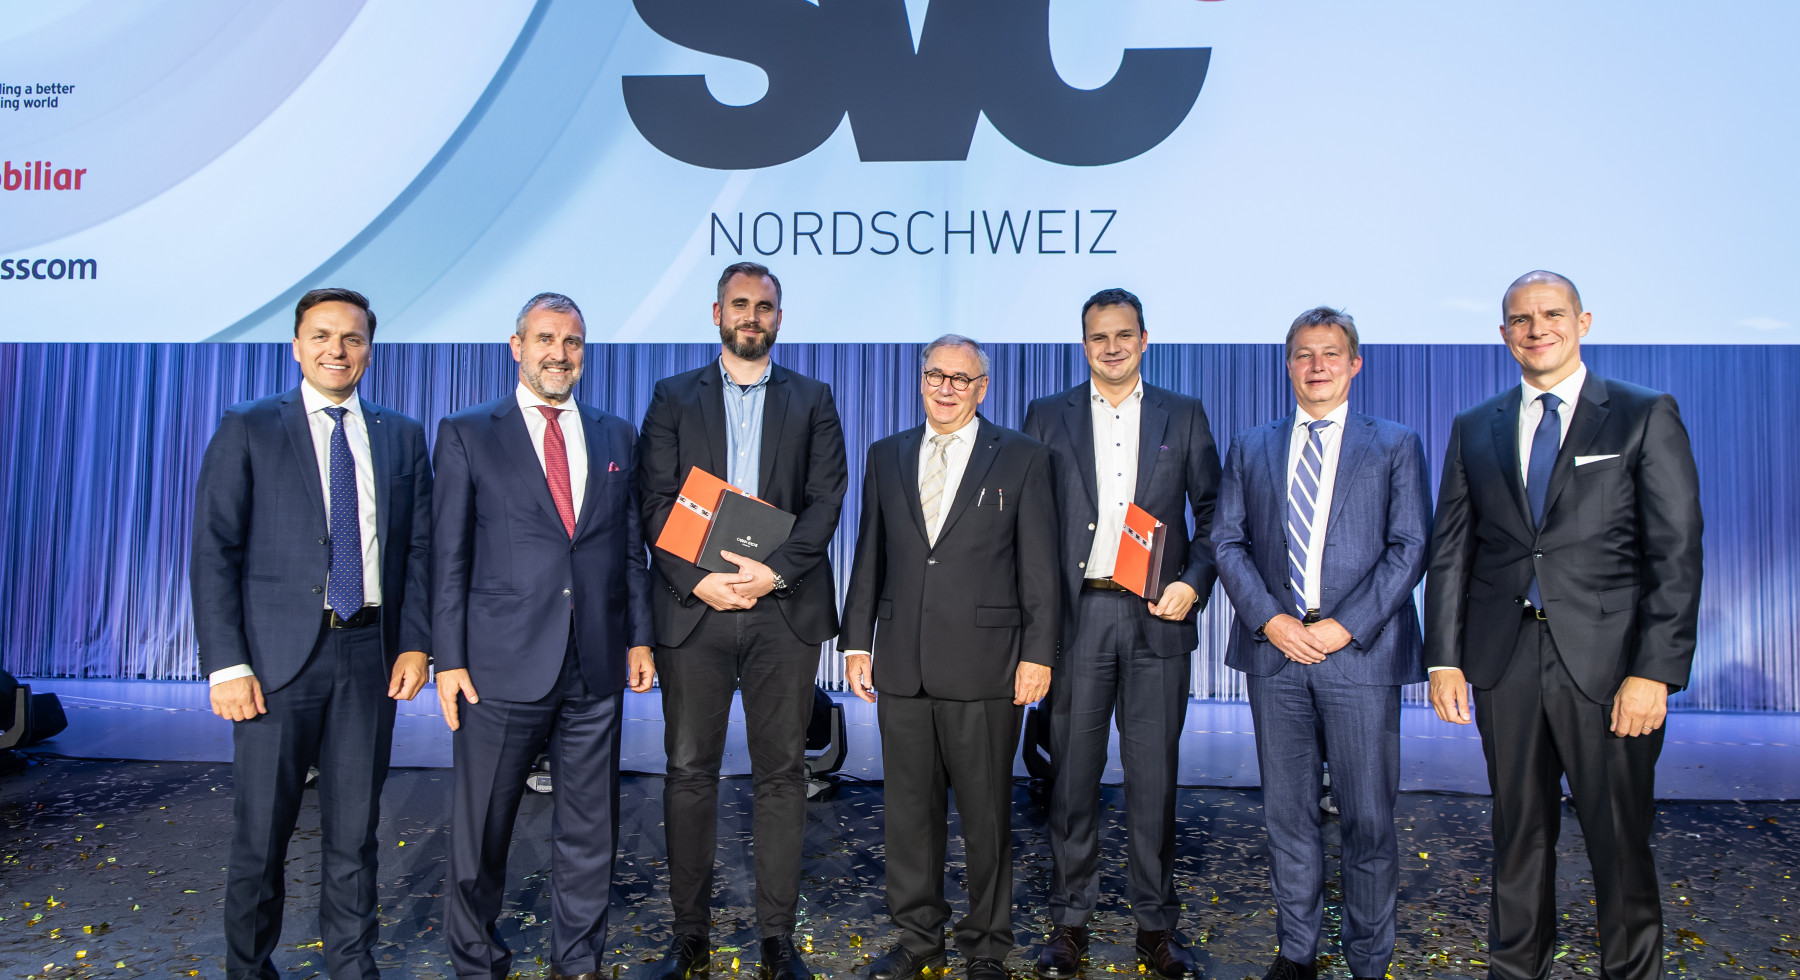 Prix Nordschweiz 2019